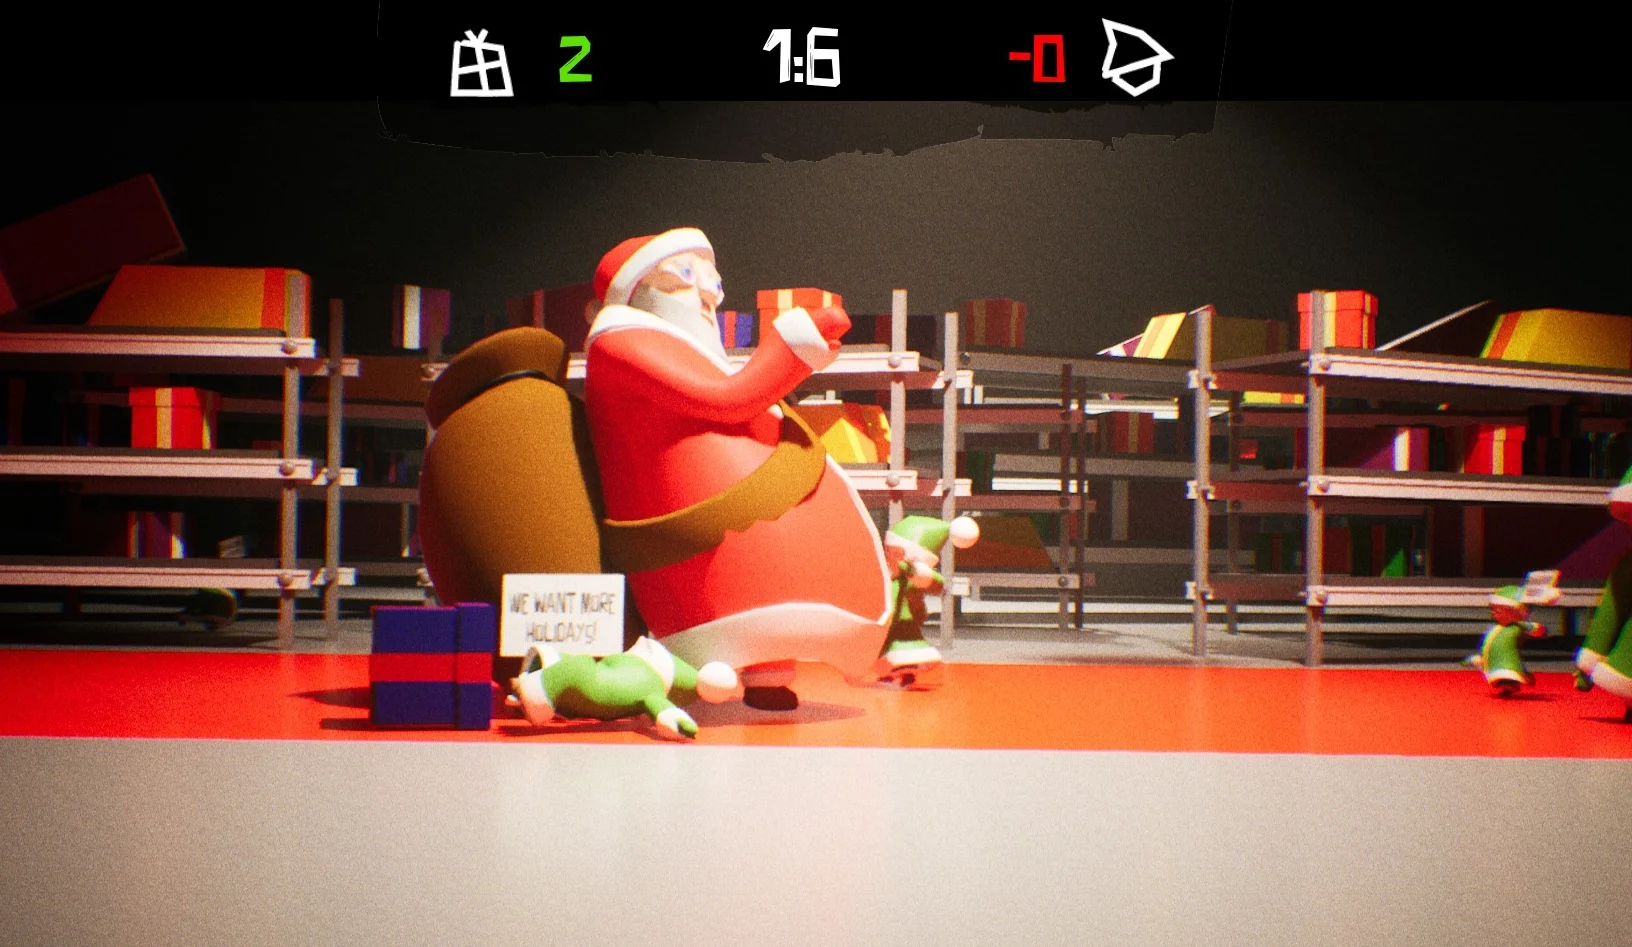 GameJam: Santas Christal Mess